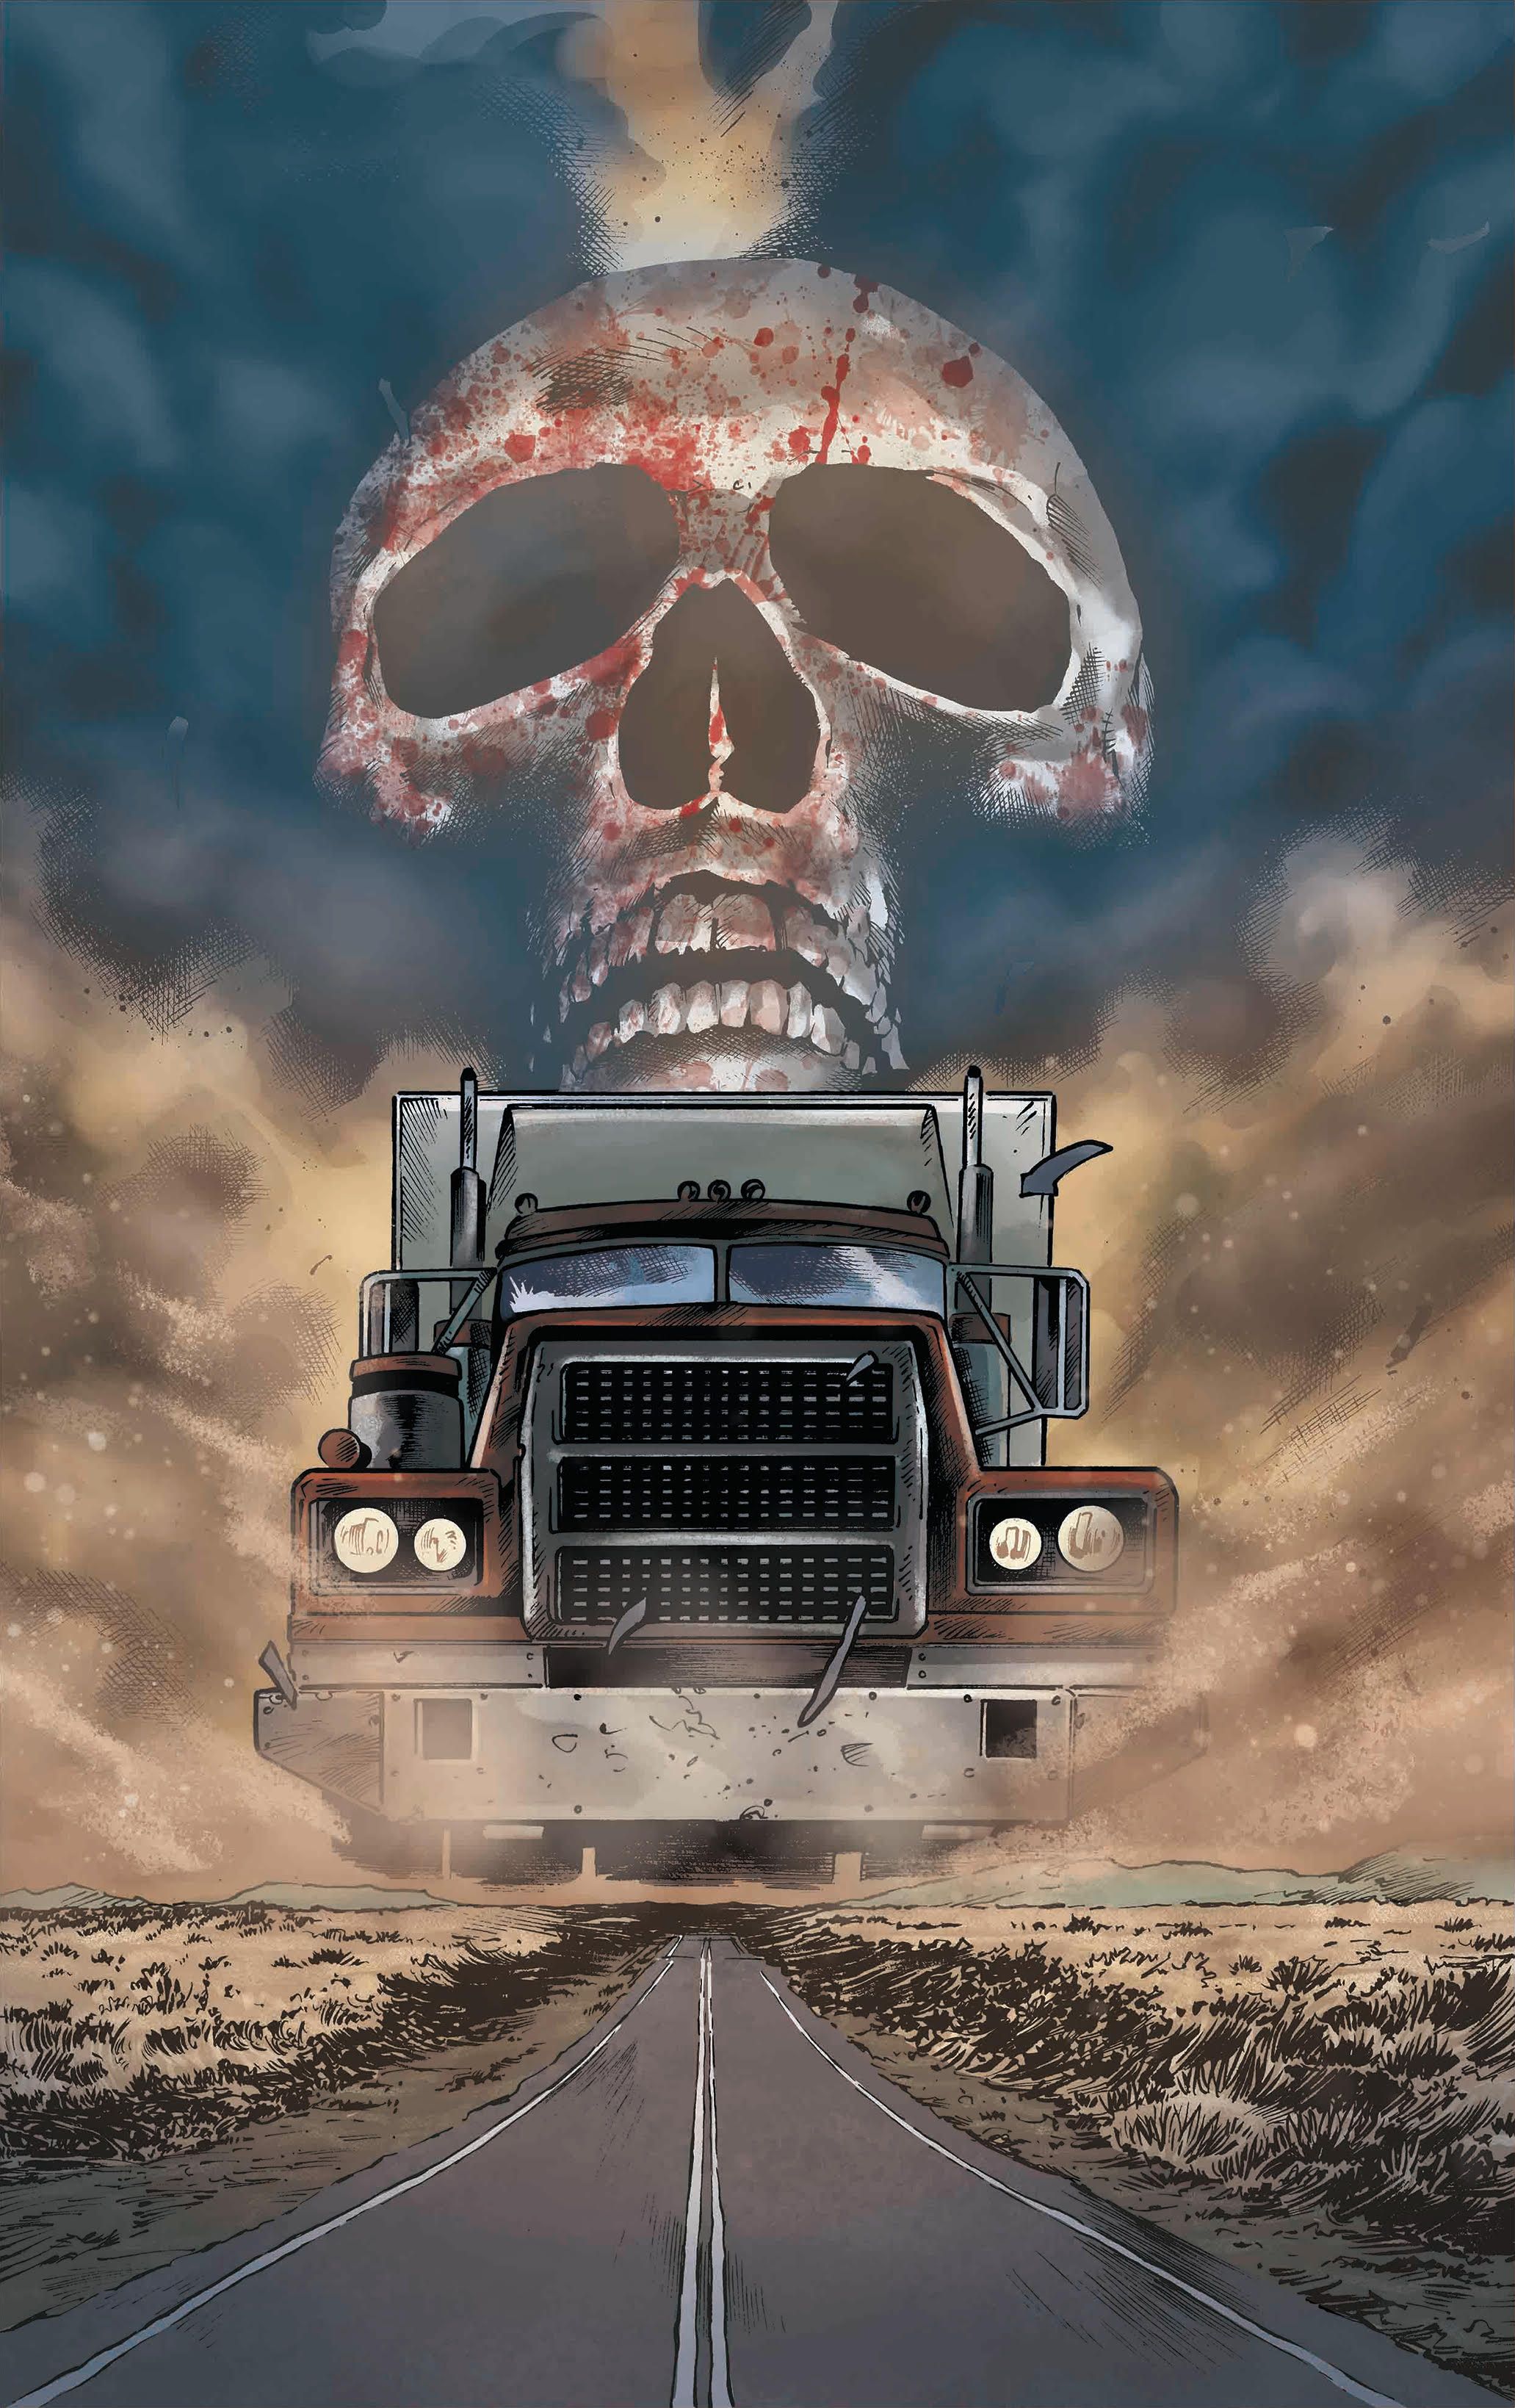 REVIEW: Storm King Comics' Long Haul Is a Killer Road Trip